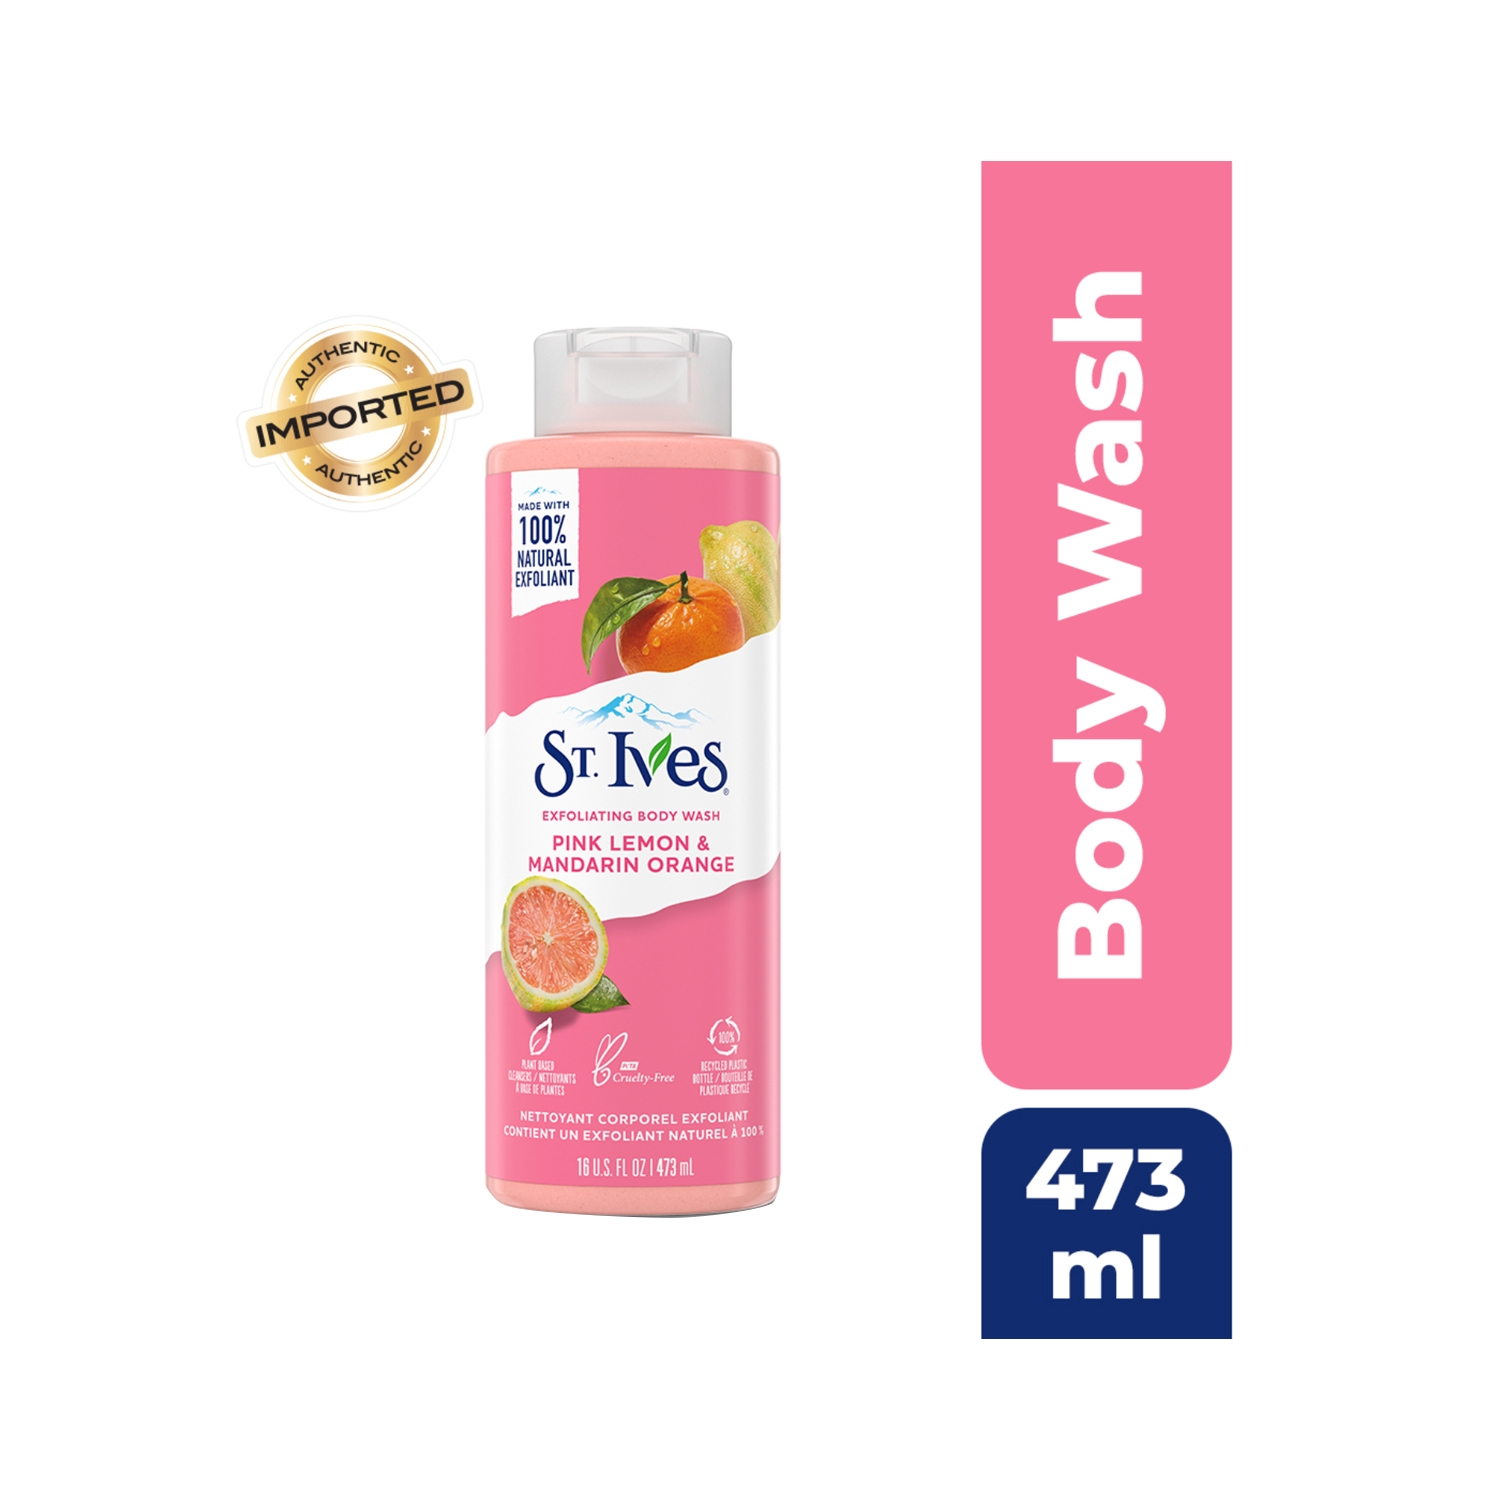 St. Ives | St. Ives Exfoliating Body Wash - Pink Lemon & Mandarin Orange extracts (473ml)